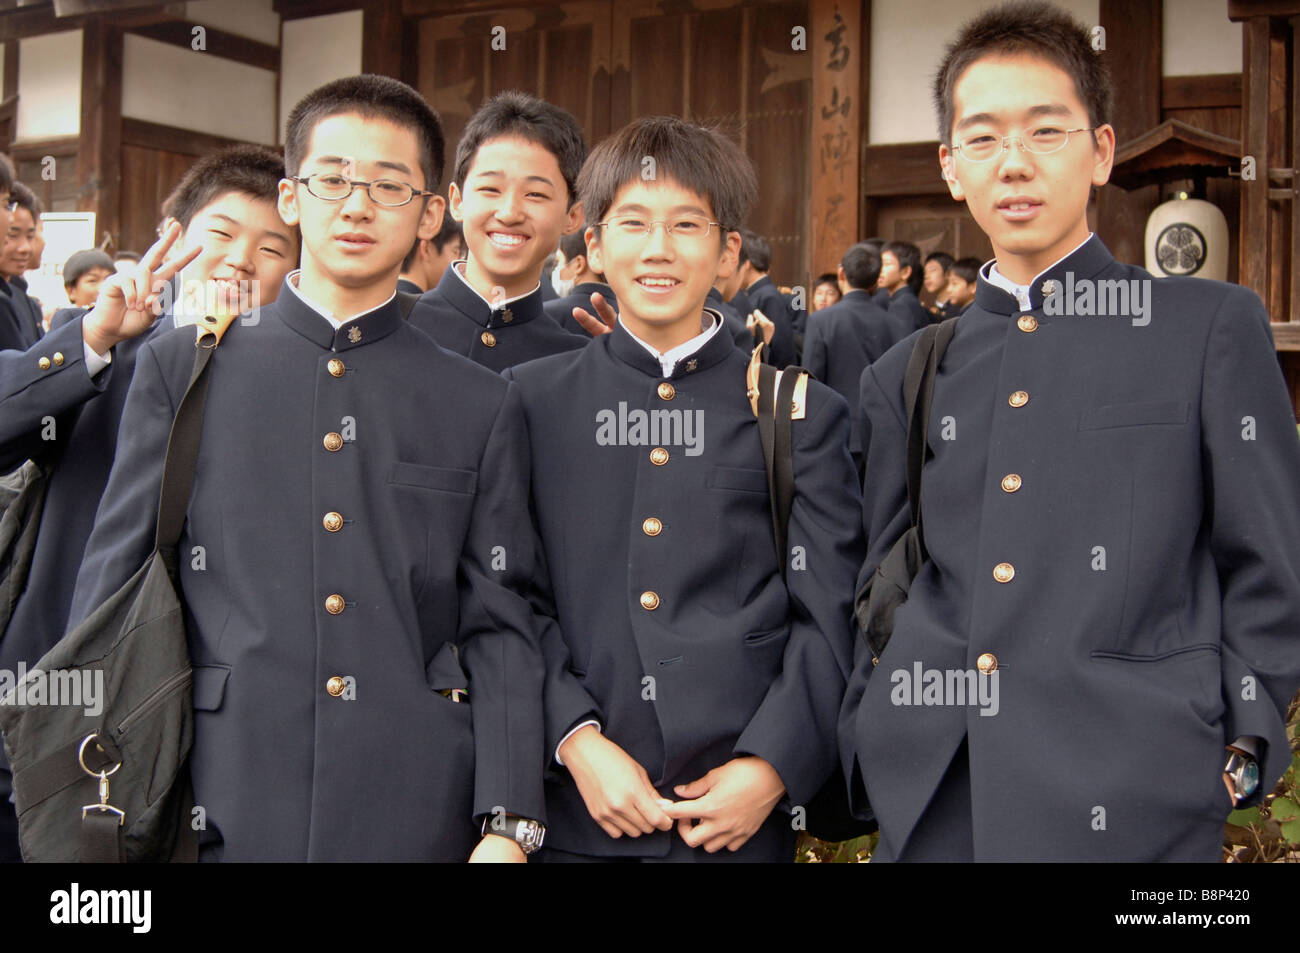 japanese-school-boys-takayama-japan-B8P420.jpg